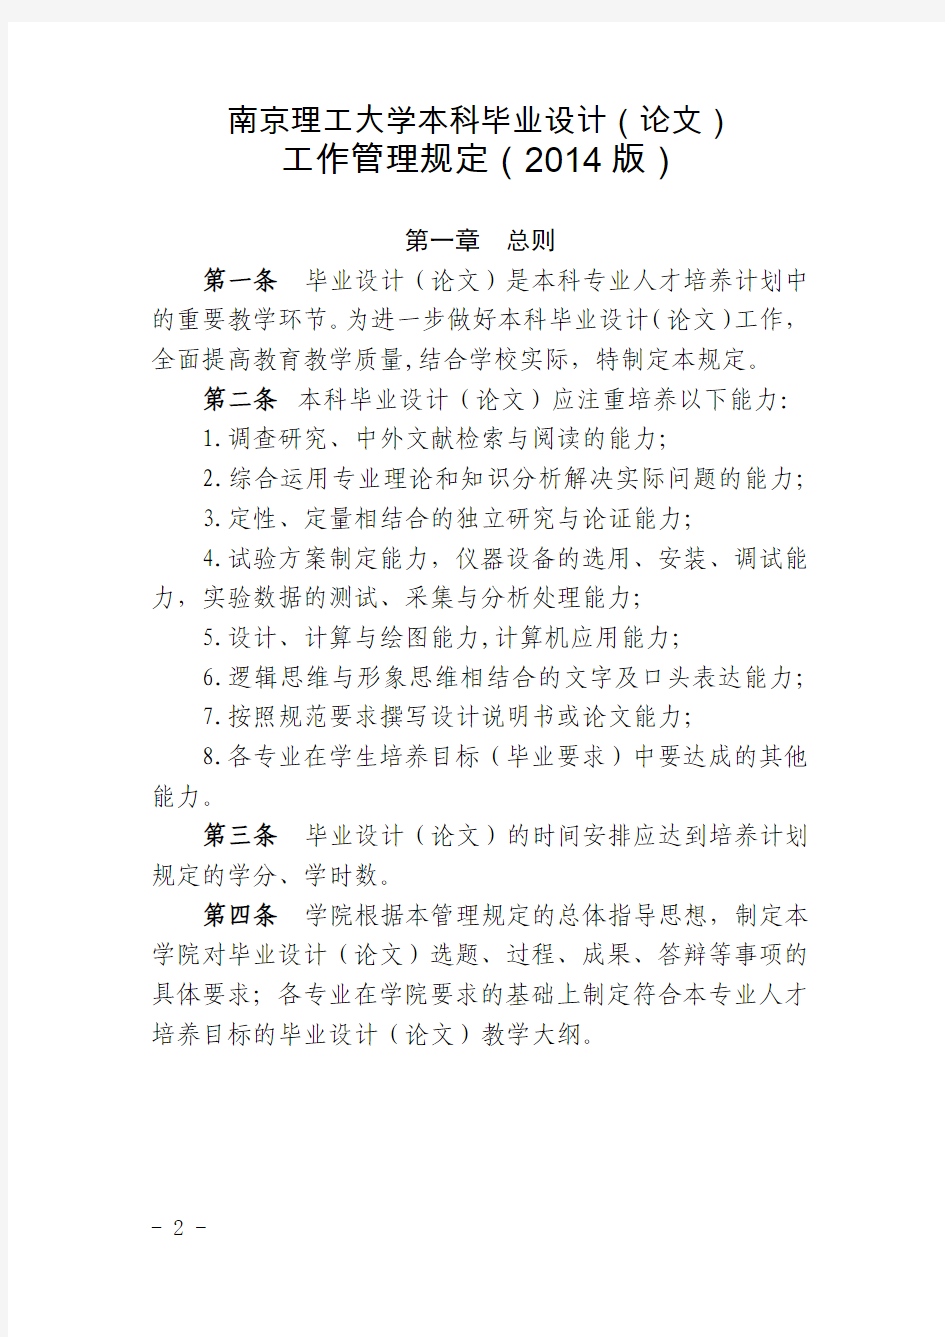 548号-关于印发《南京理工大学本科毕业设计(论文)工作管理规定(2014版)》的通知